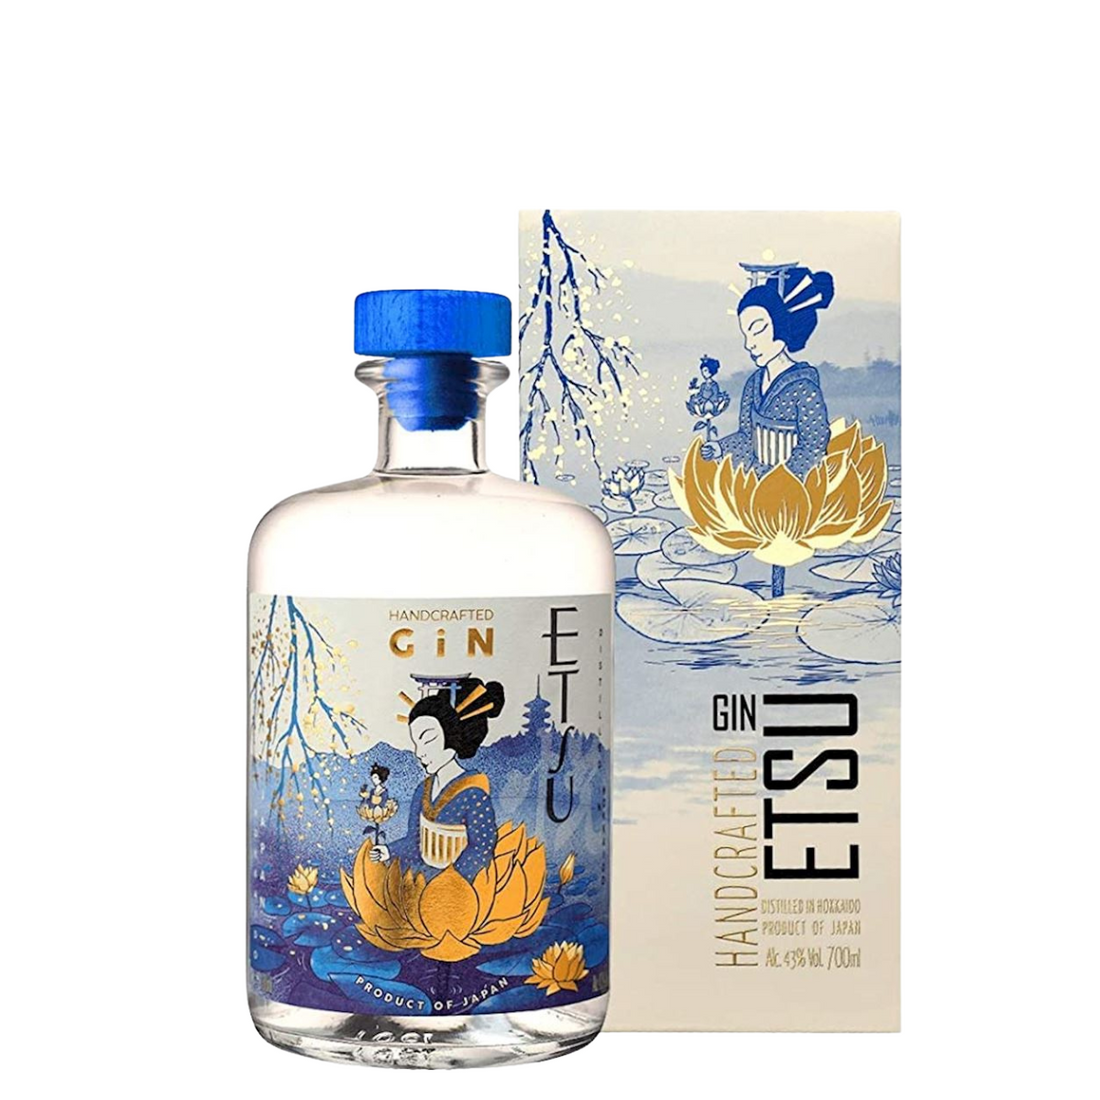 Gin ETSU Premium handcrafted